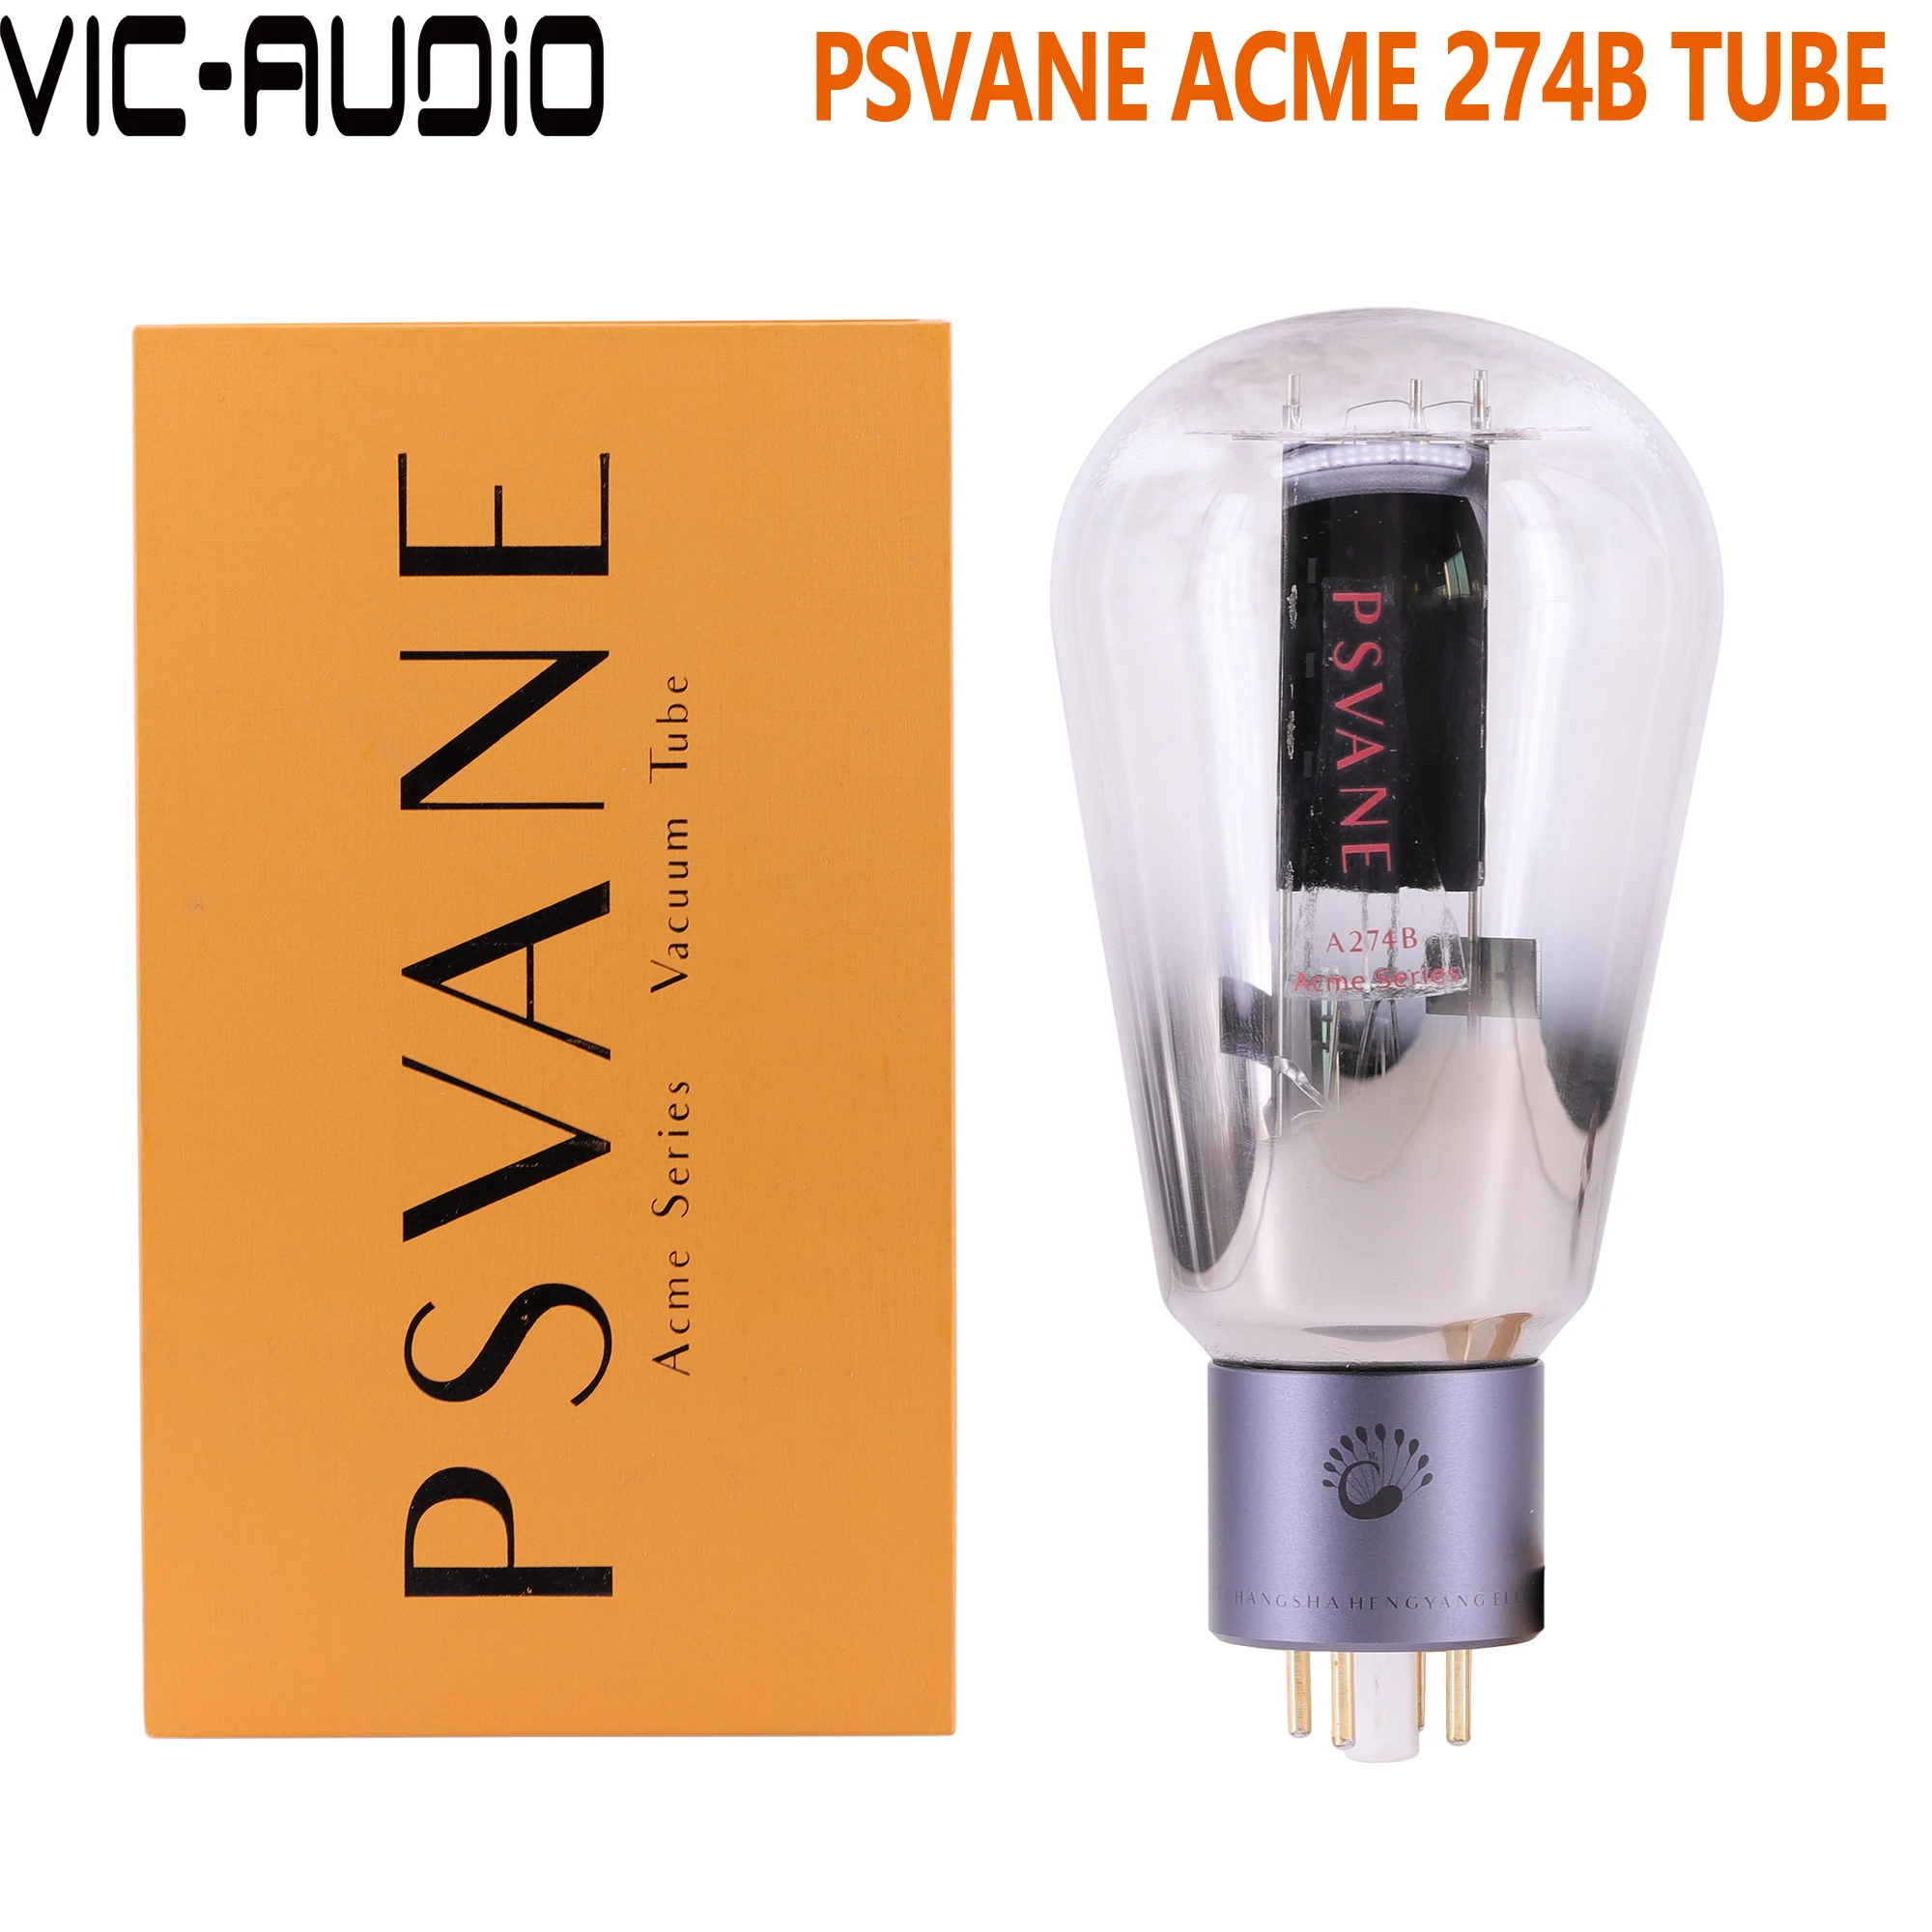 Новая вакуумная трубка Psvane серии Acme 274B замена 274 5U4 5U4G 5Z3P 5Z3PAT электронная для